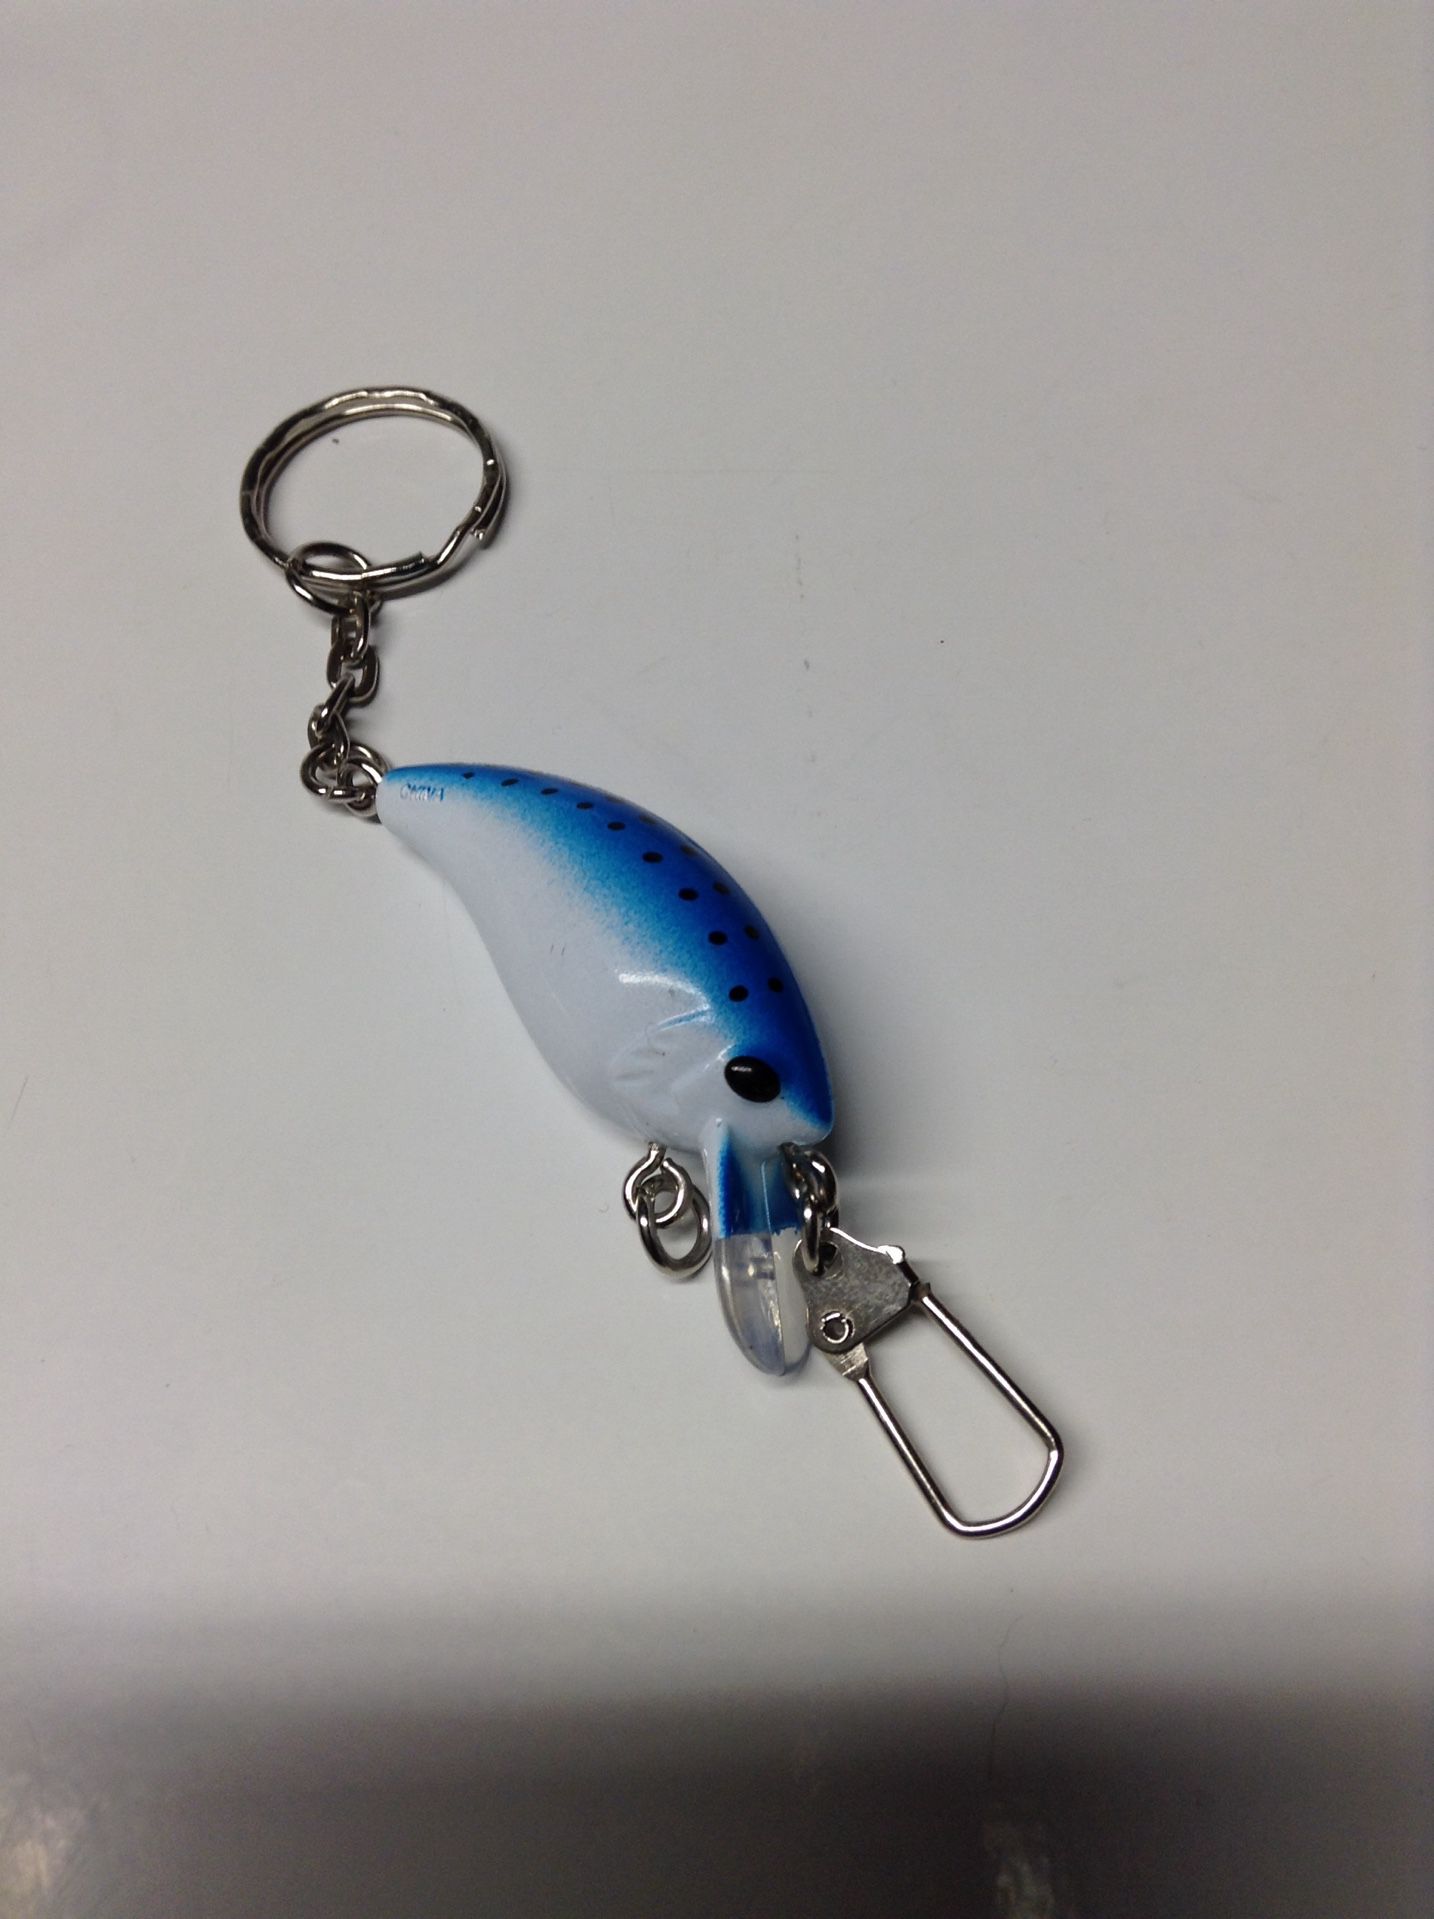 Fishing lure keychain